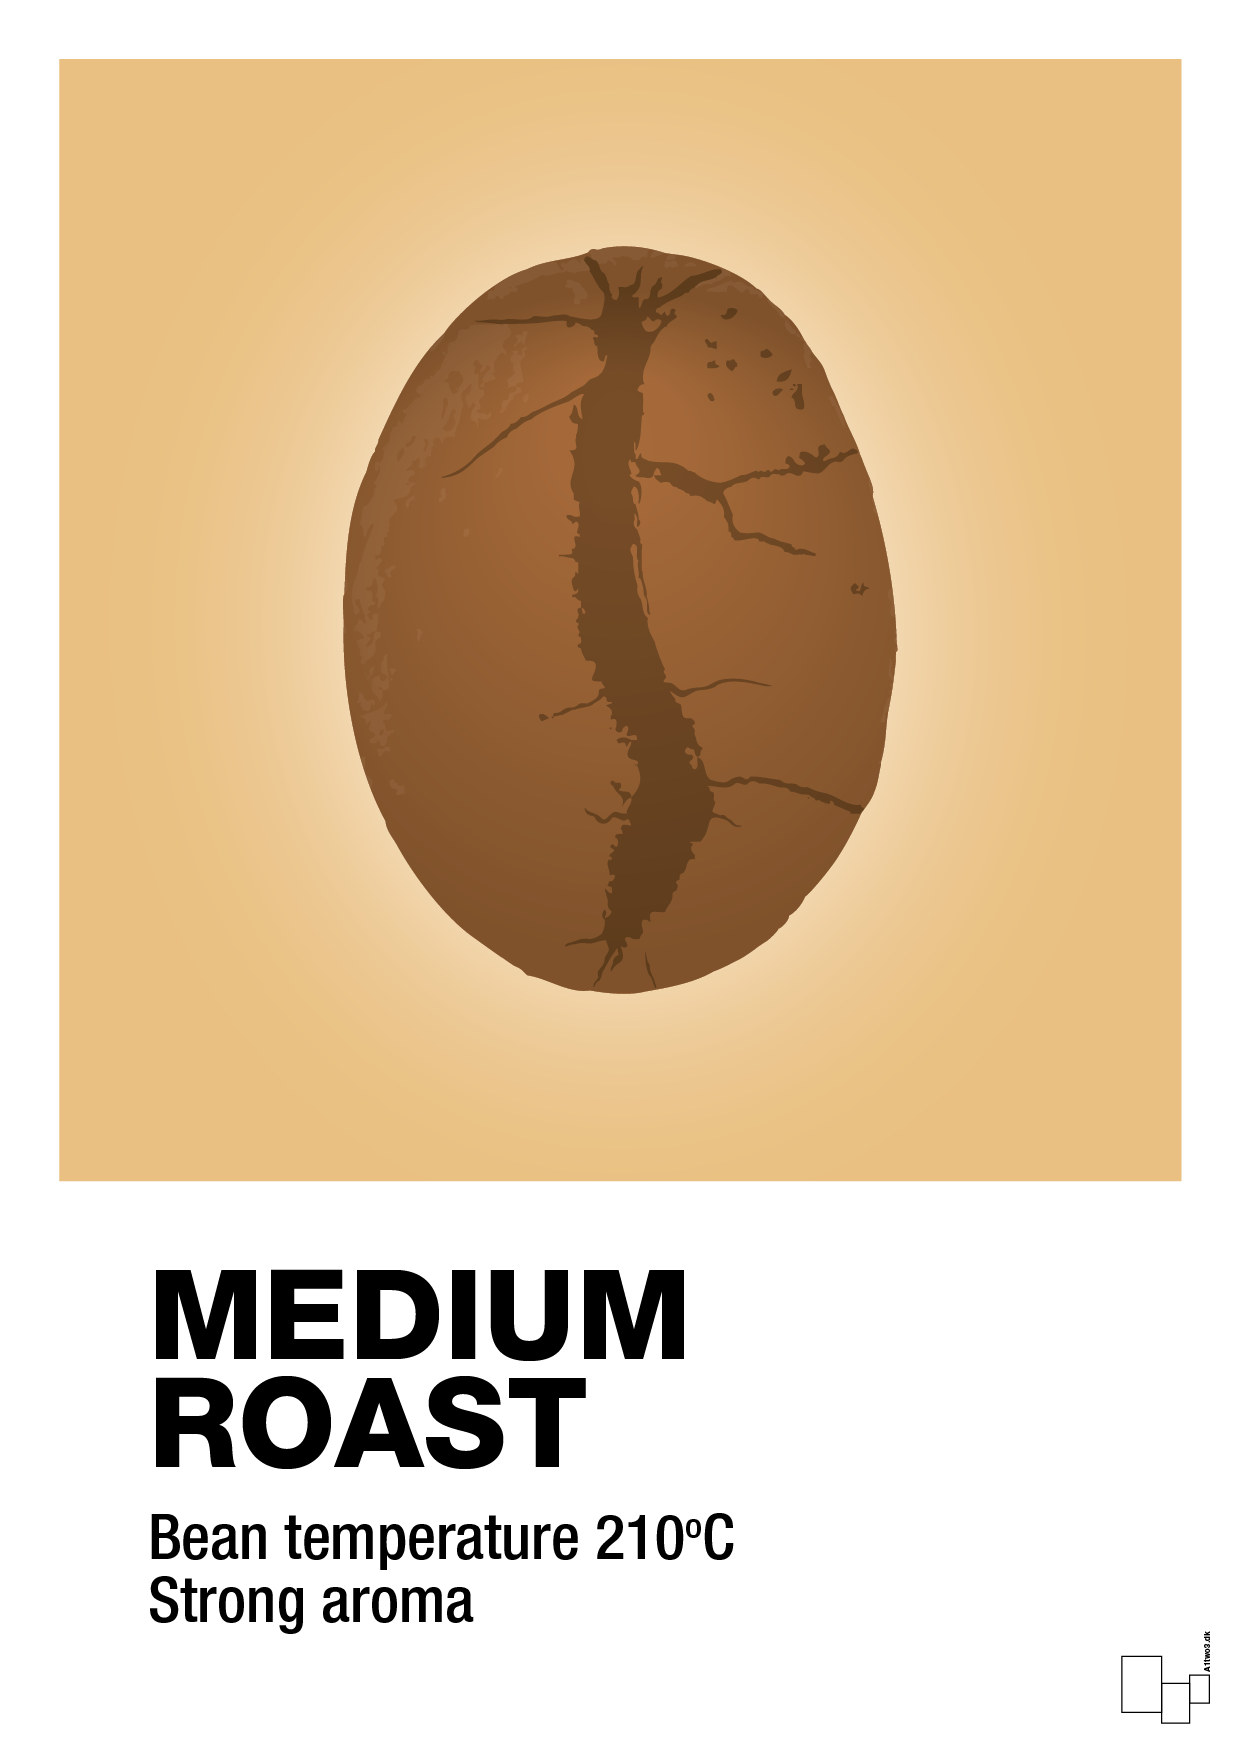 medium roast - Plakat med Mad & Drikke i Charismatic